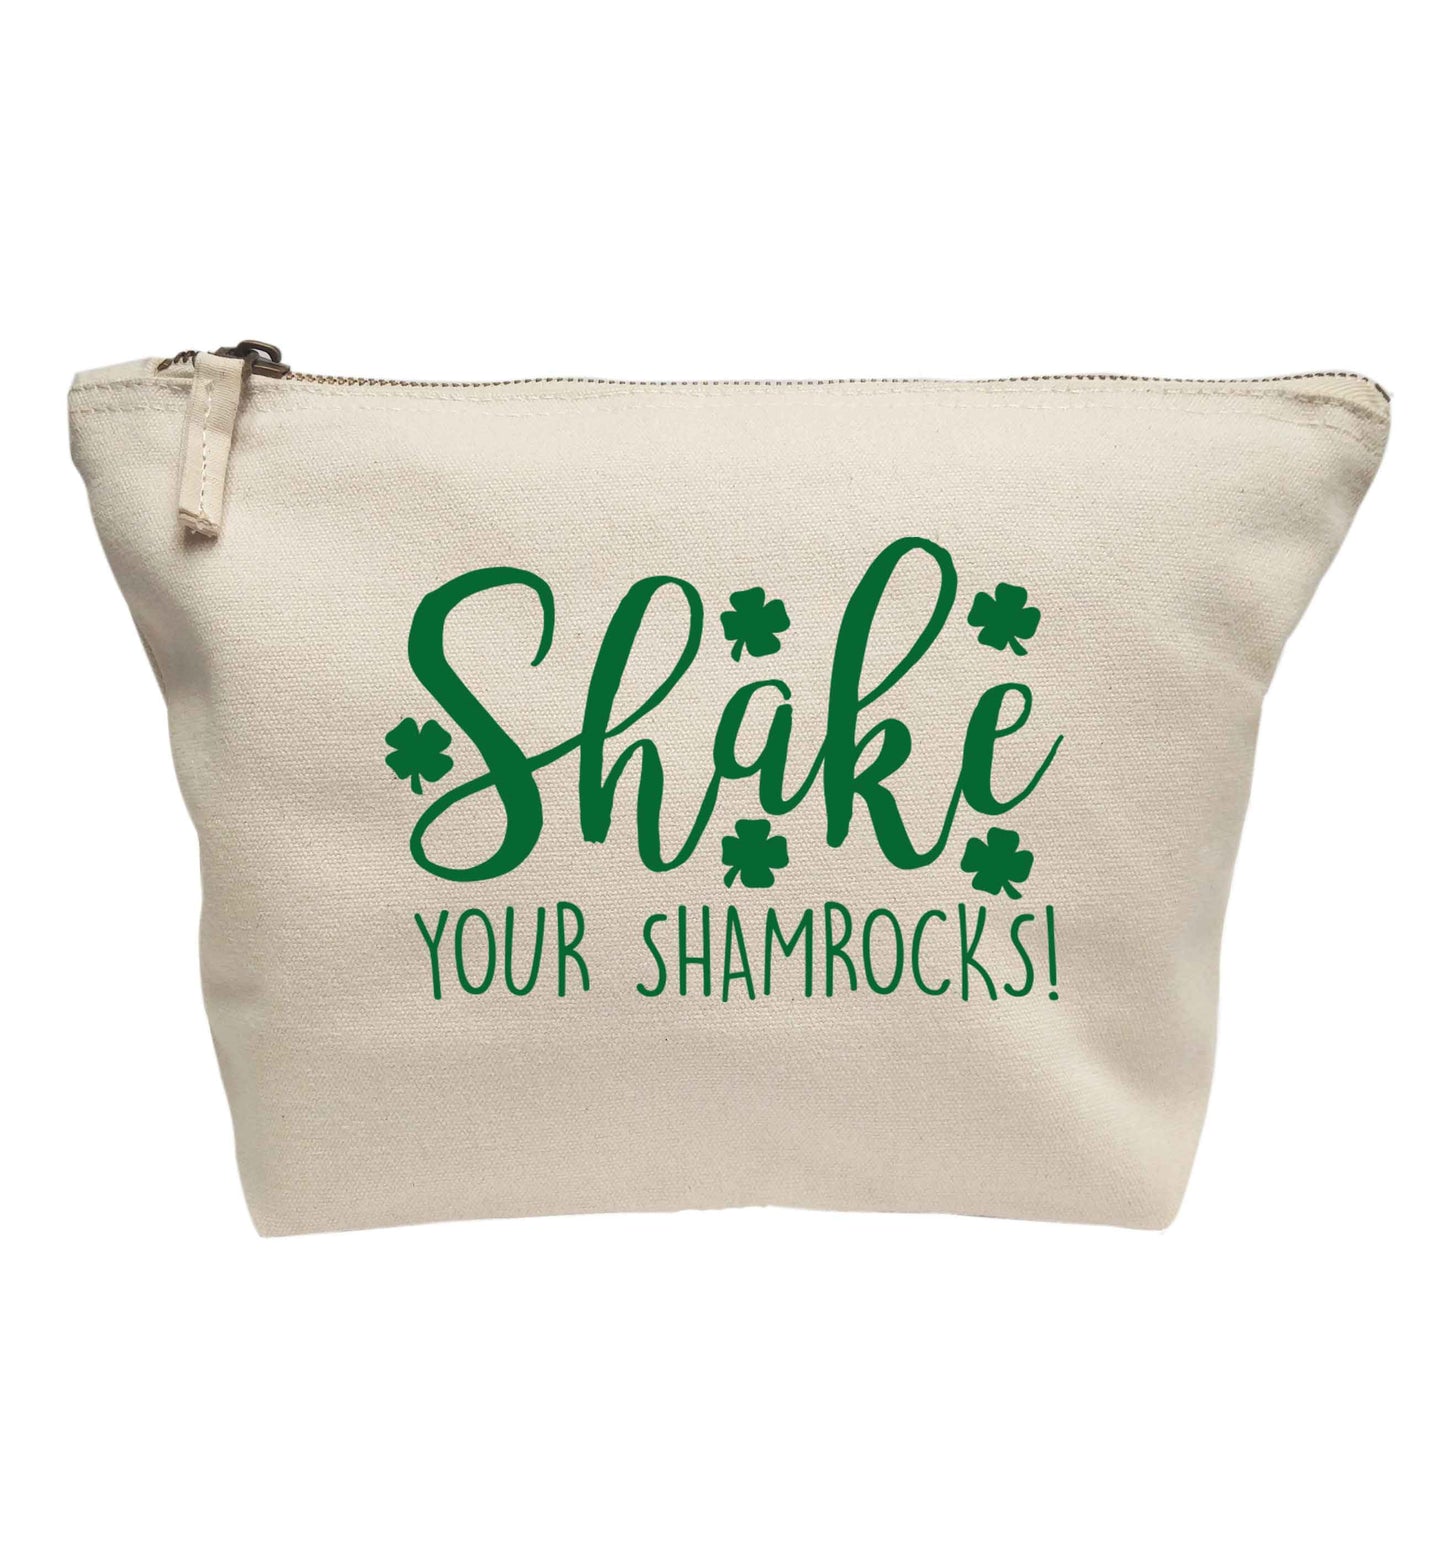 Shake your shamrocks | Makeup / wash bag